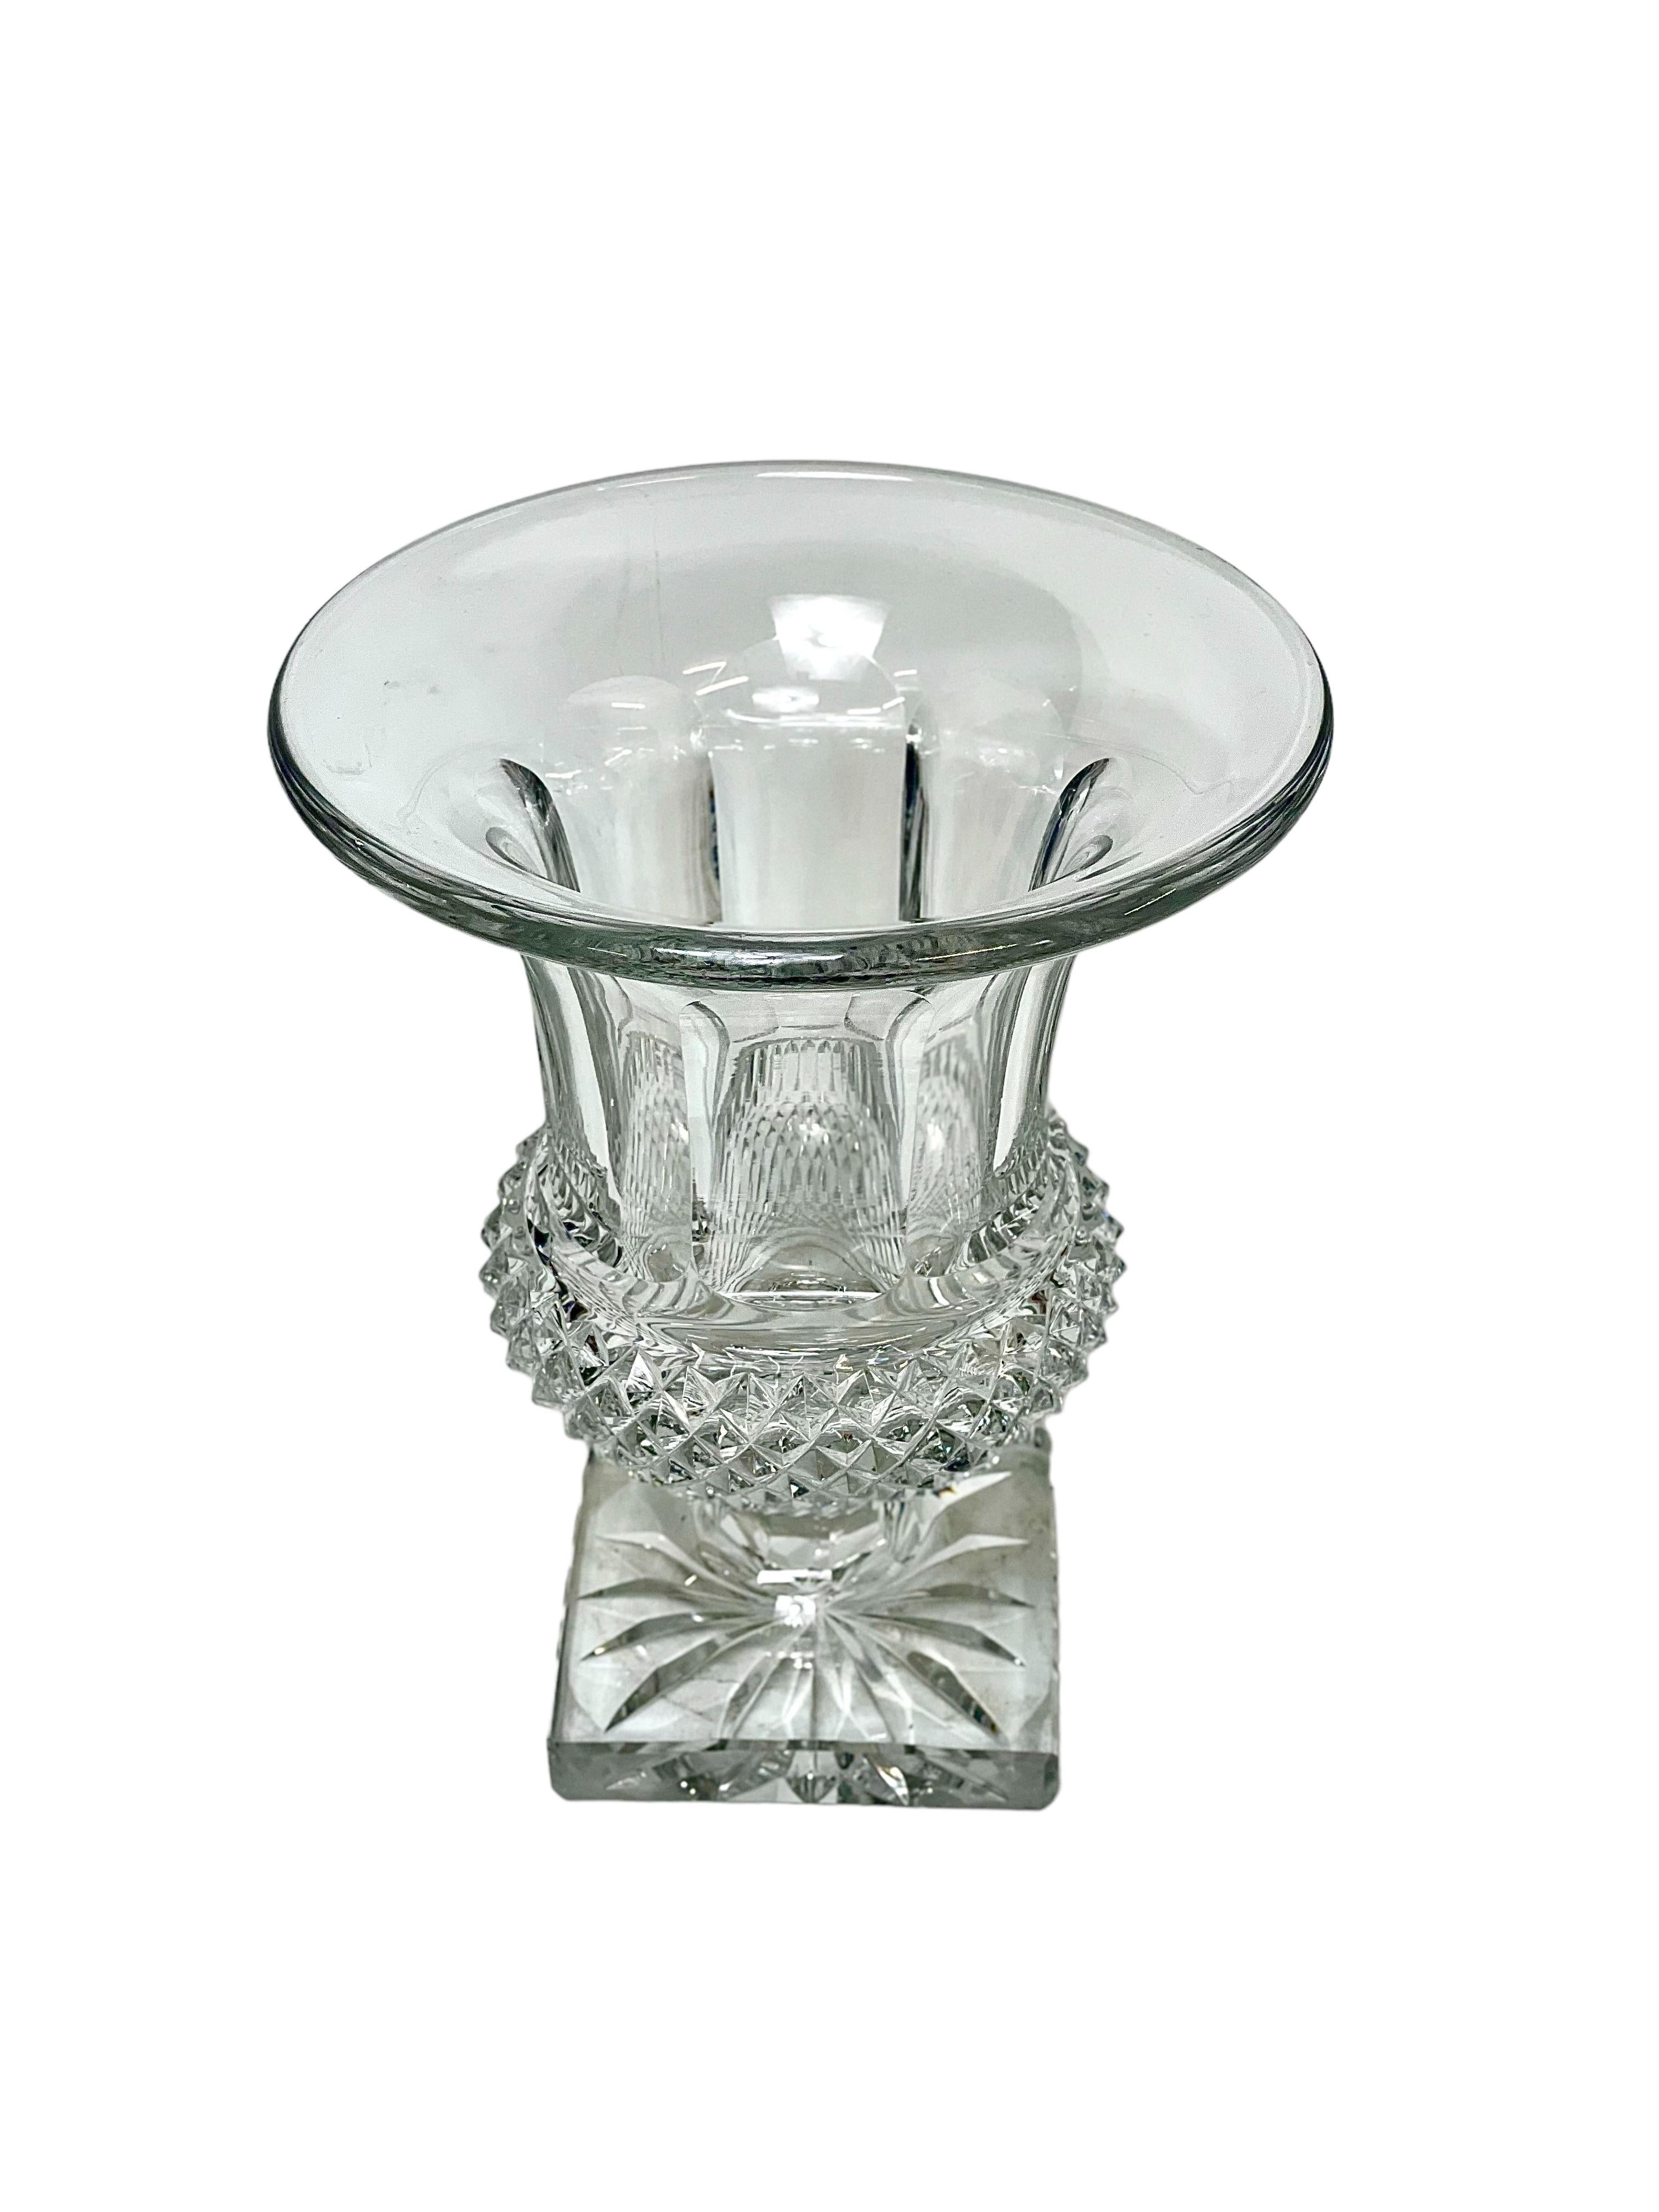 Eine klassische Vase aus geschliffenem Kristall im Medici-Stil von Saint Louis. Der untere Teil ist in großflächigen Rauten geschliffen, der obere Teil ist elegant geriffelt. Die Vase steht auf einem massiven quadratischen Sockel, der sternförmig